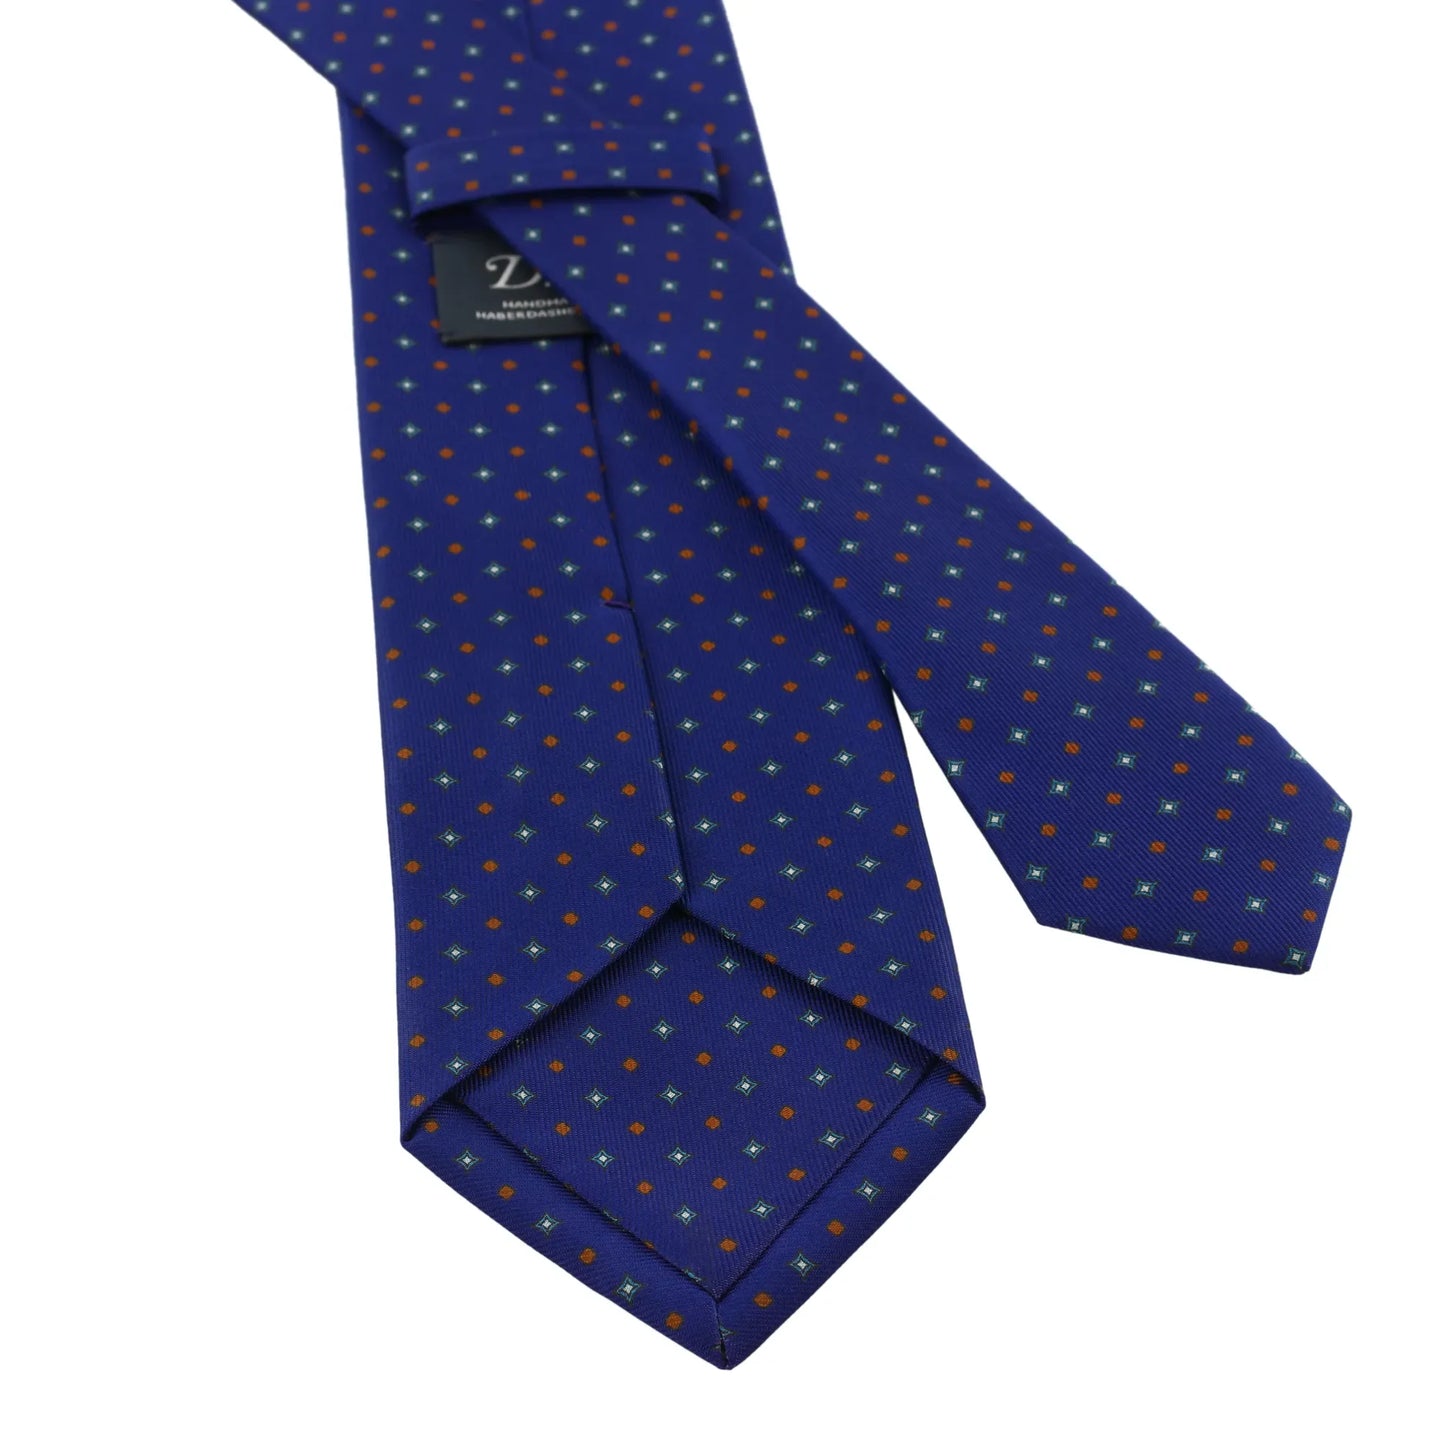 Printed Self-Tipped Tie in Royal Blue